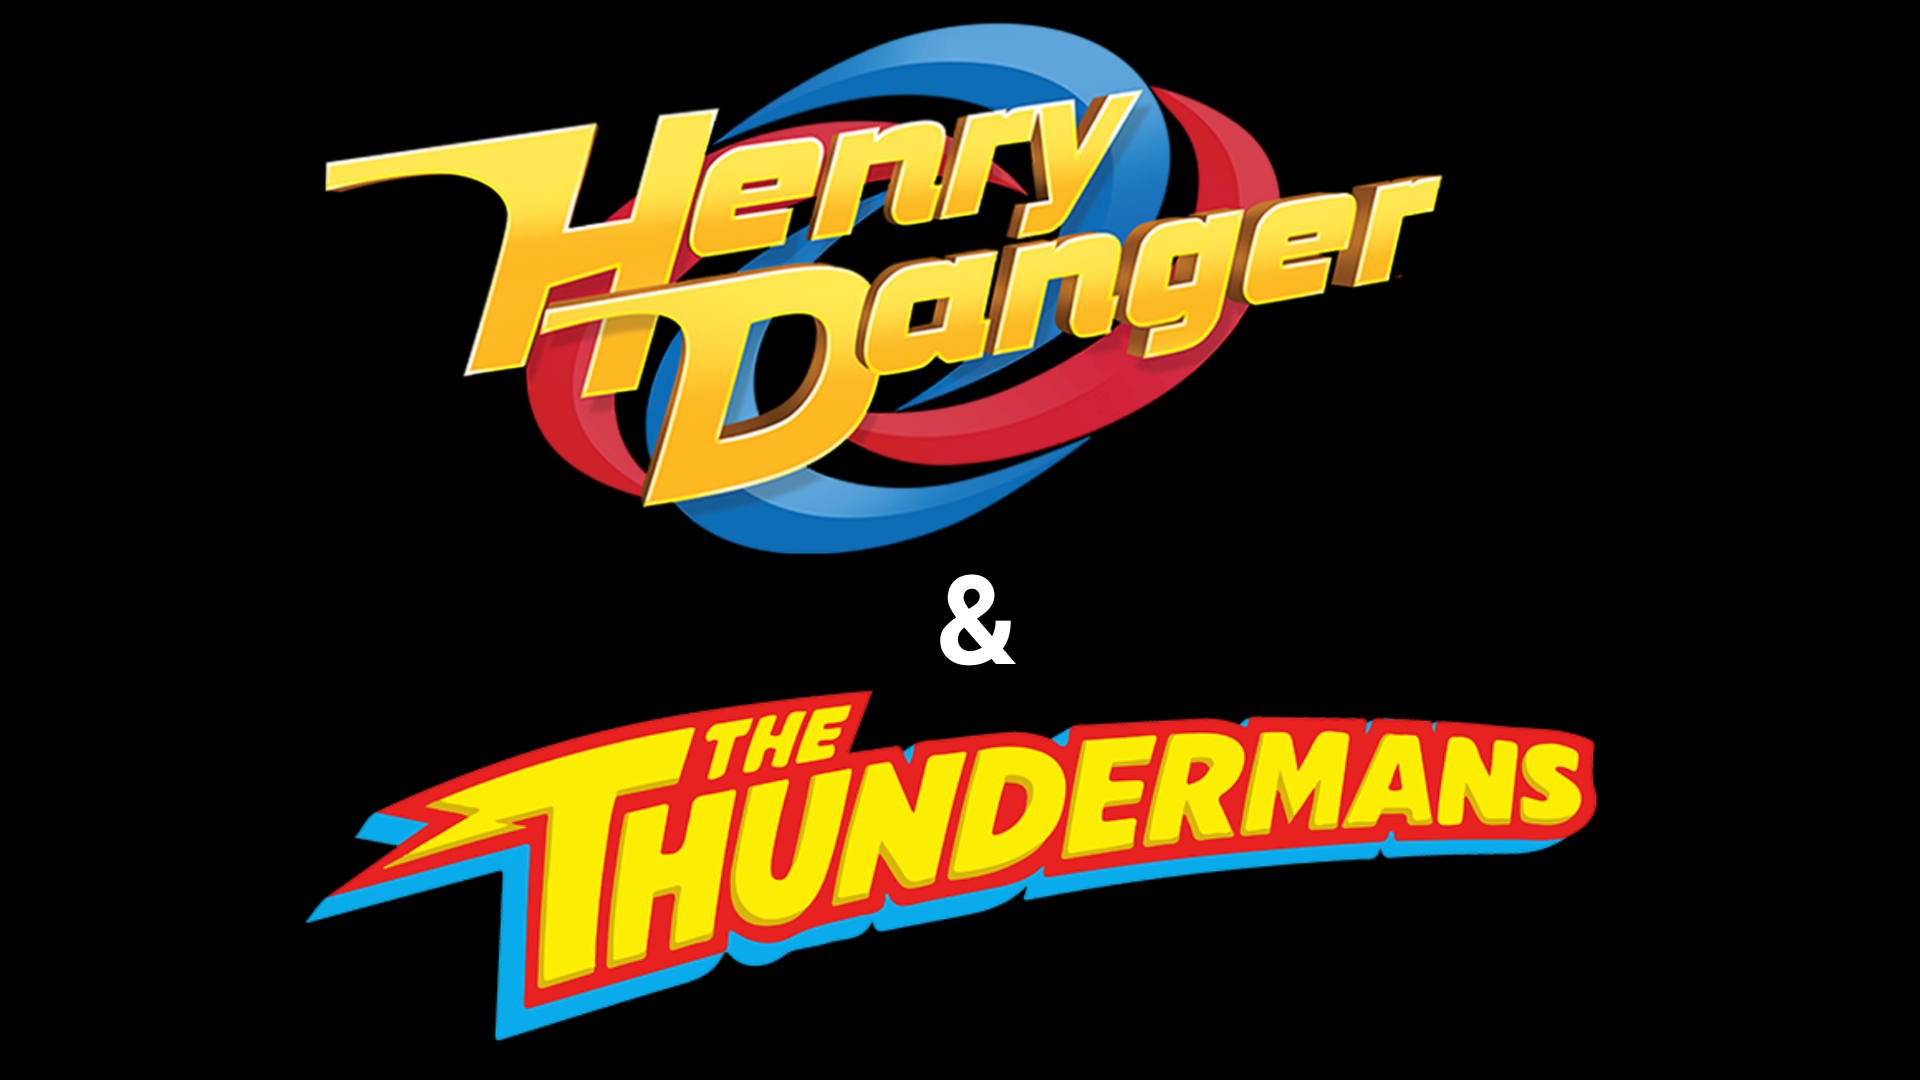 Henry Danger em Português  Henry Danger e os Thundermans